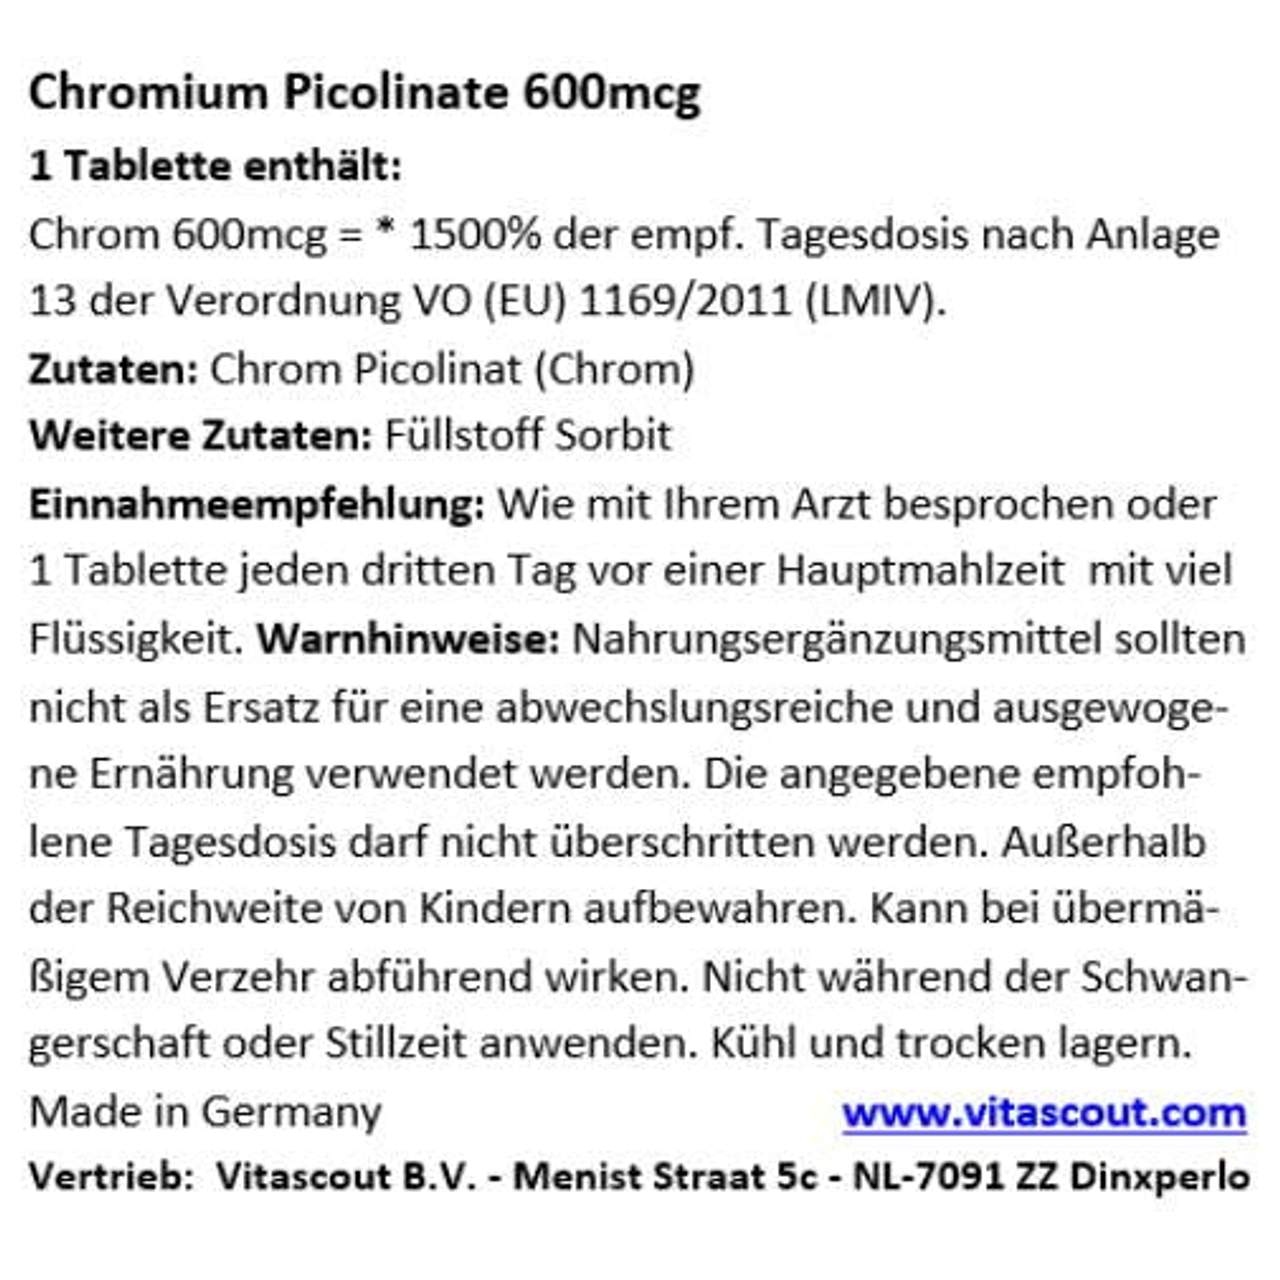 Chromium Picolinate 600mcg PRO Tablette